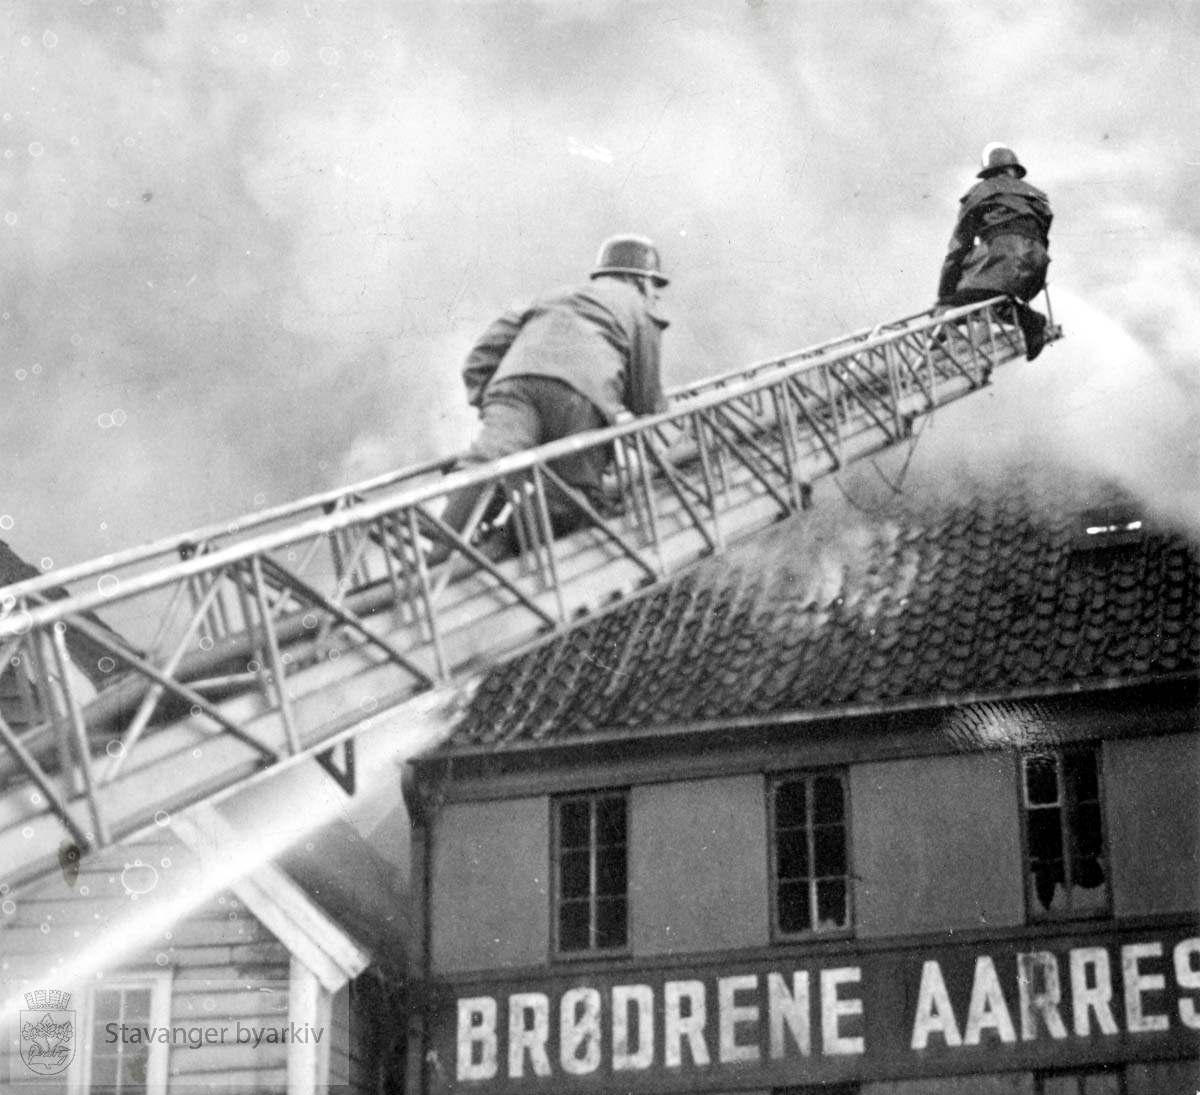 Brannmenn slukker brann fra brannstige.